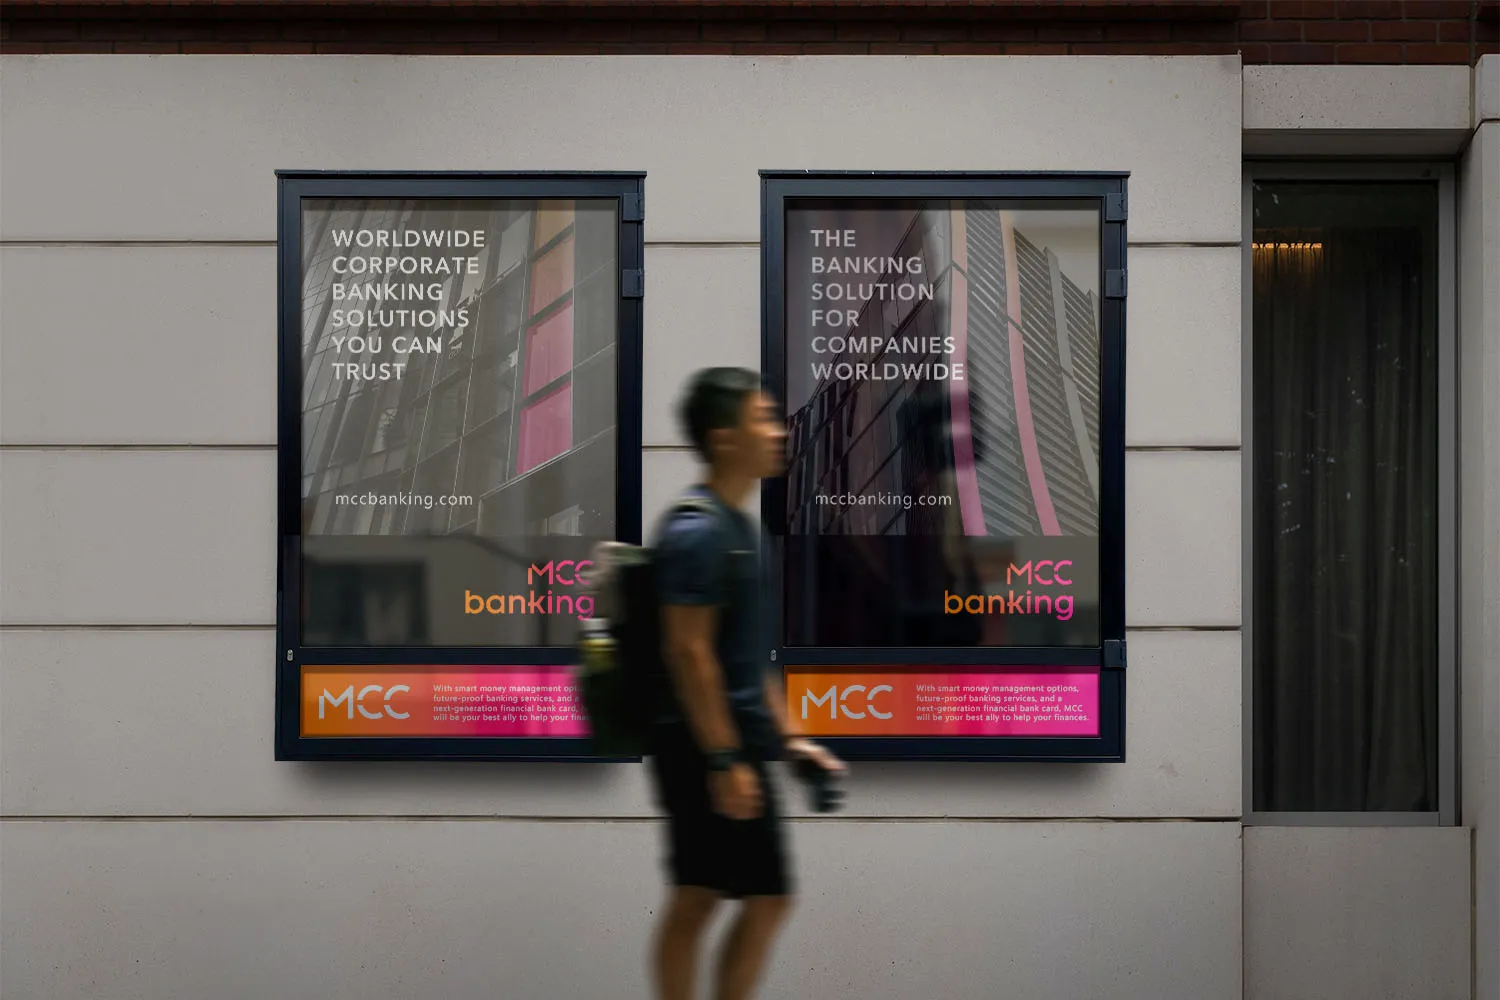 MCC Banking advertising